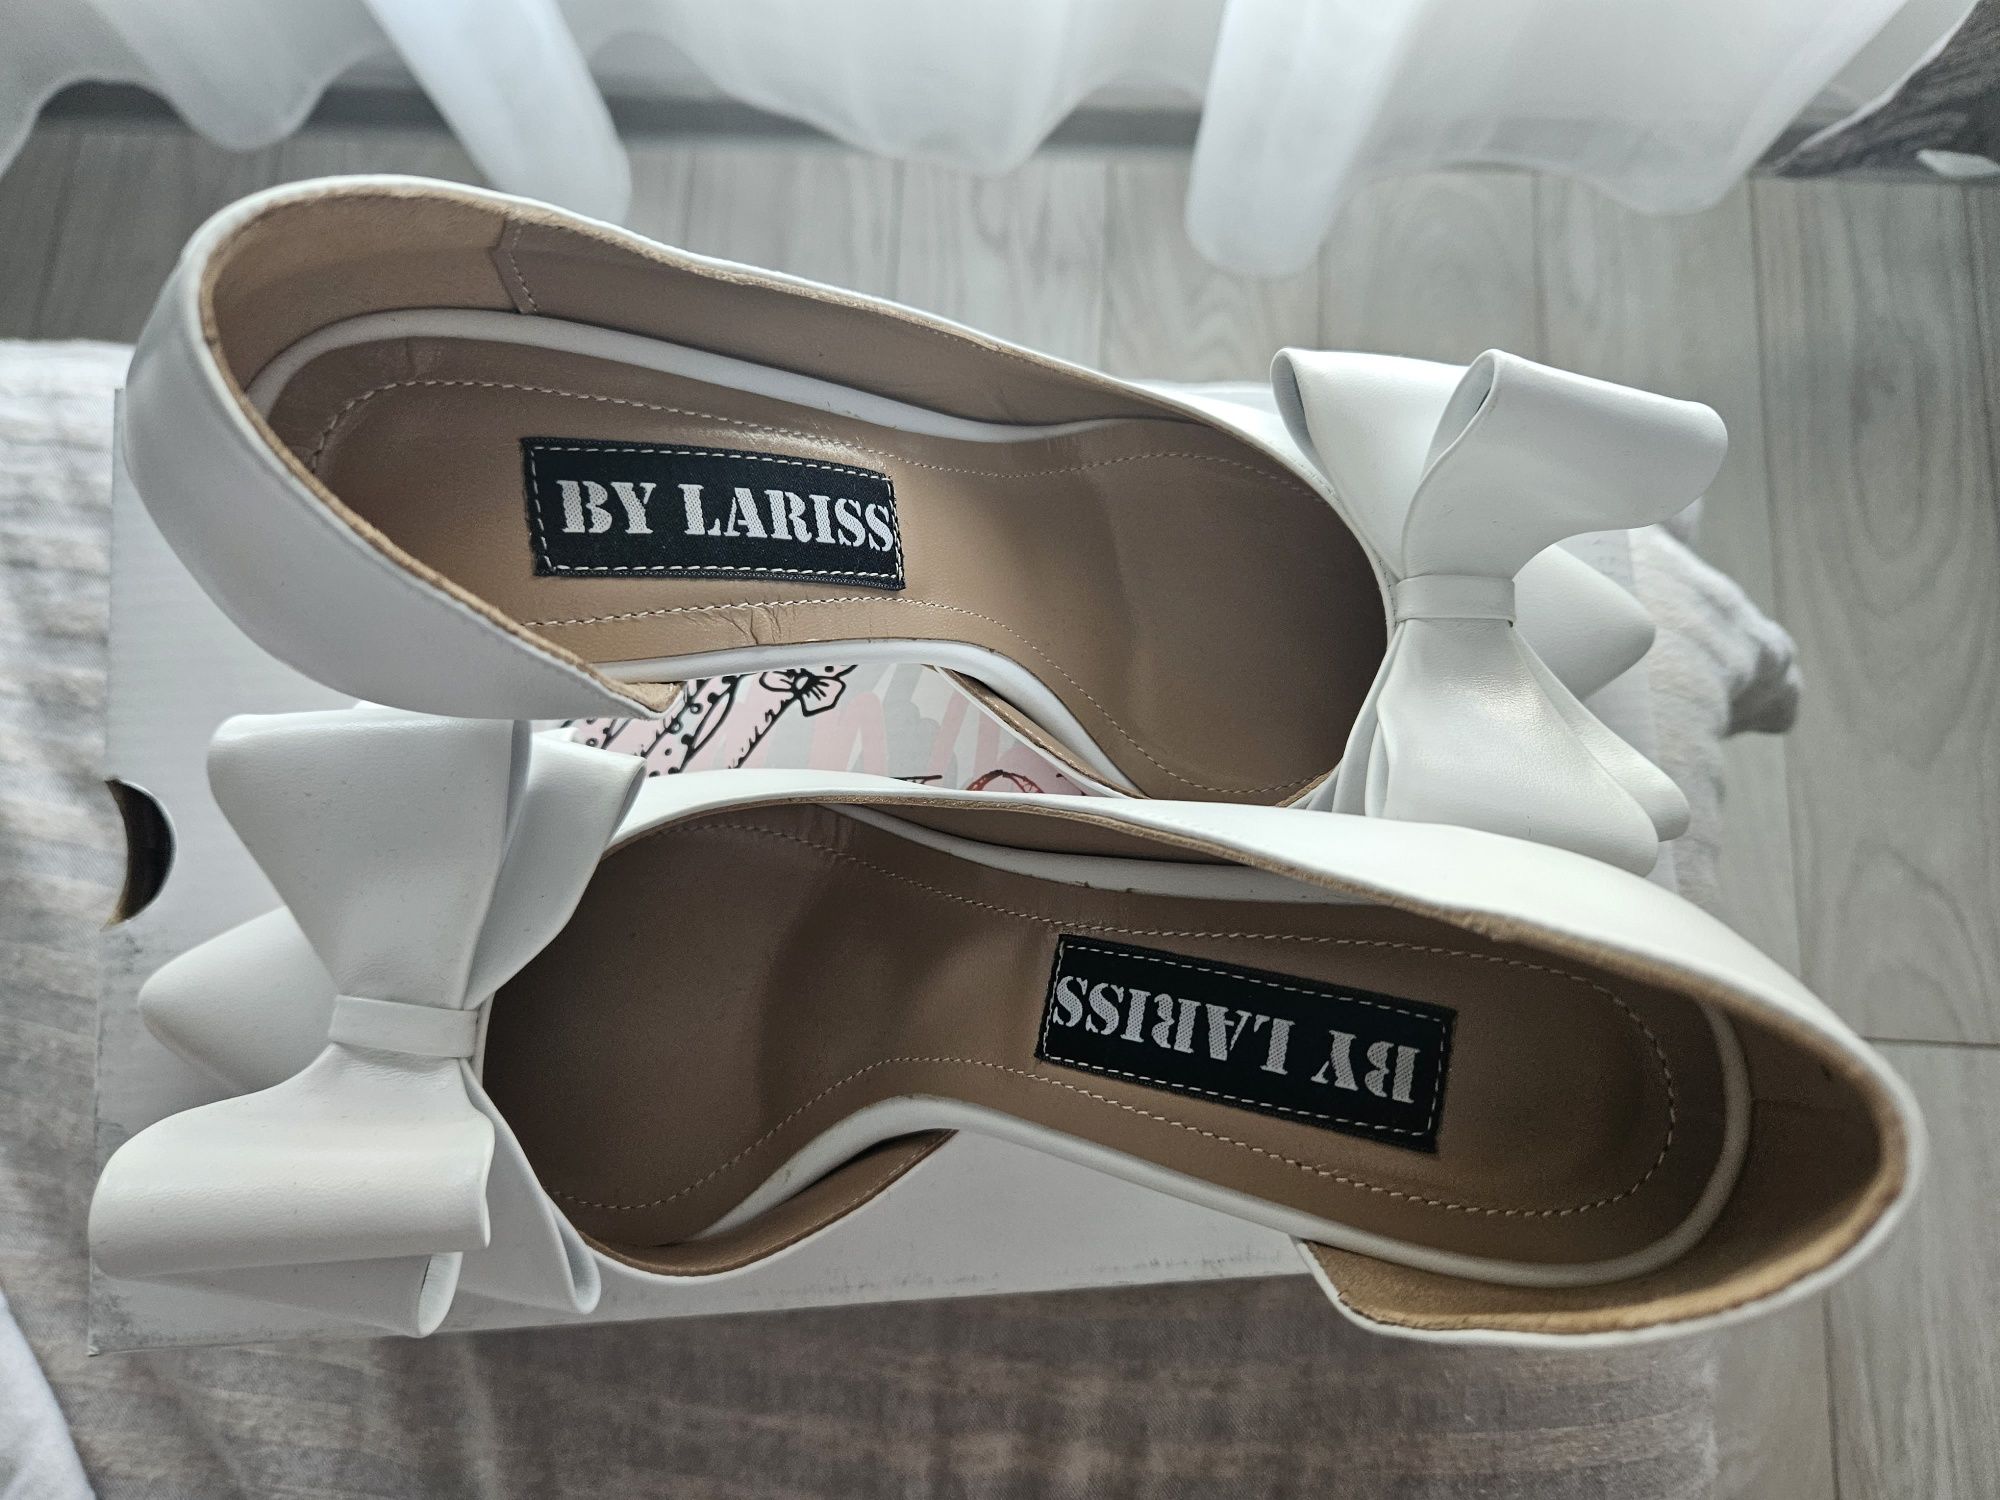 Pantofi dama eleganți albi